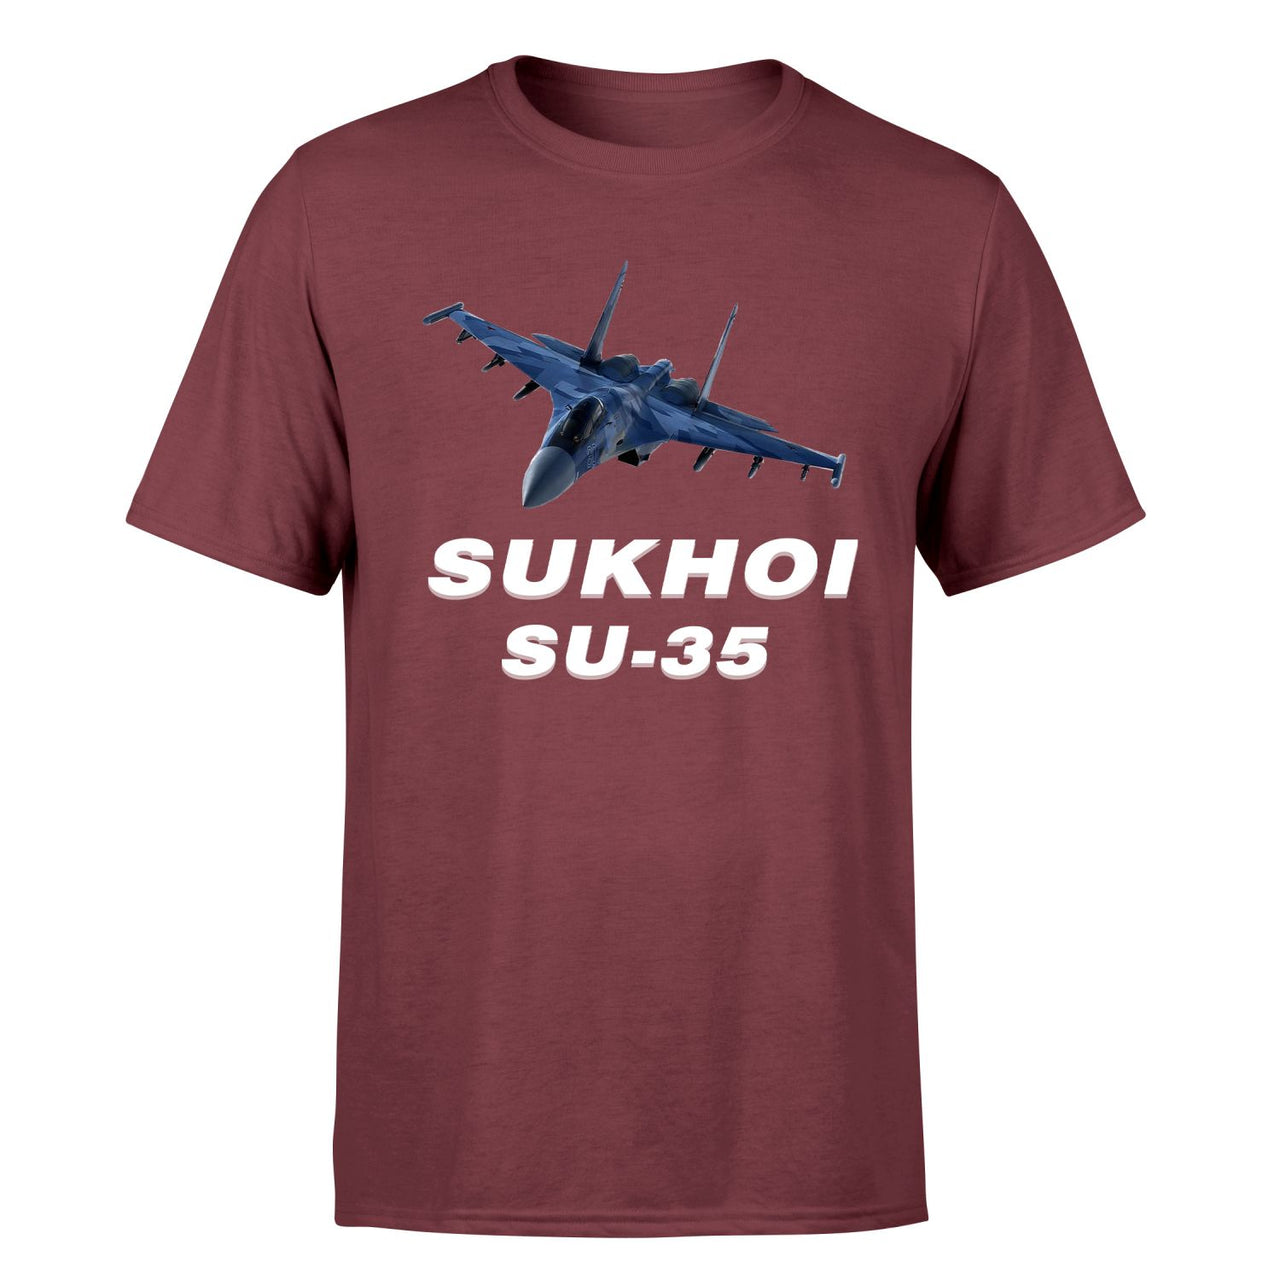 The Sukhoi SU-35 Designed T-Shirts